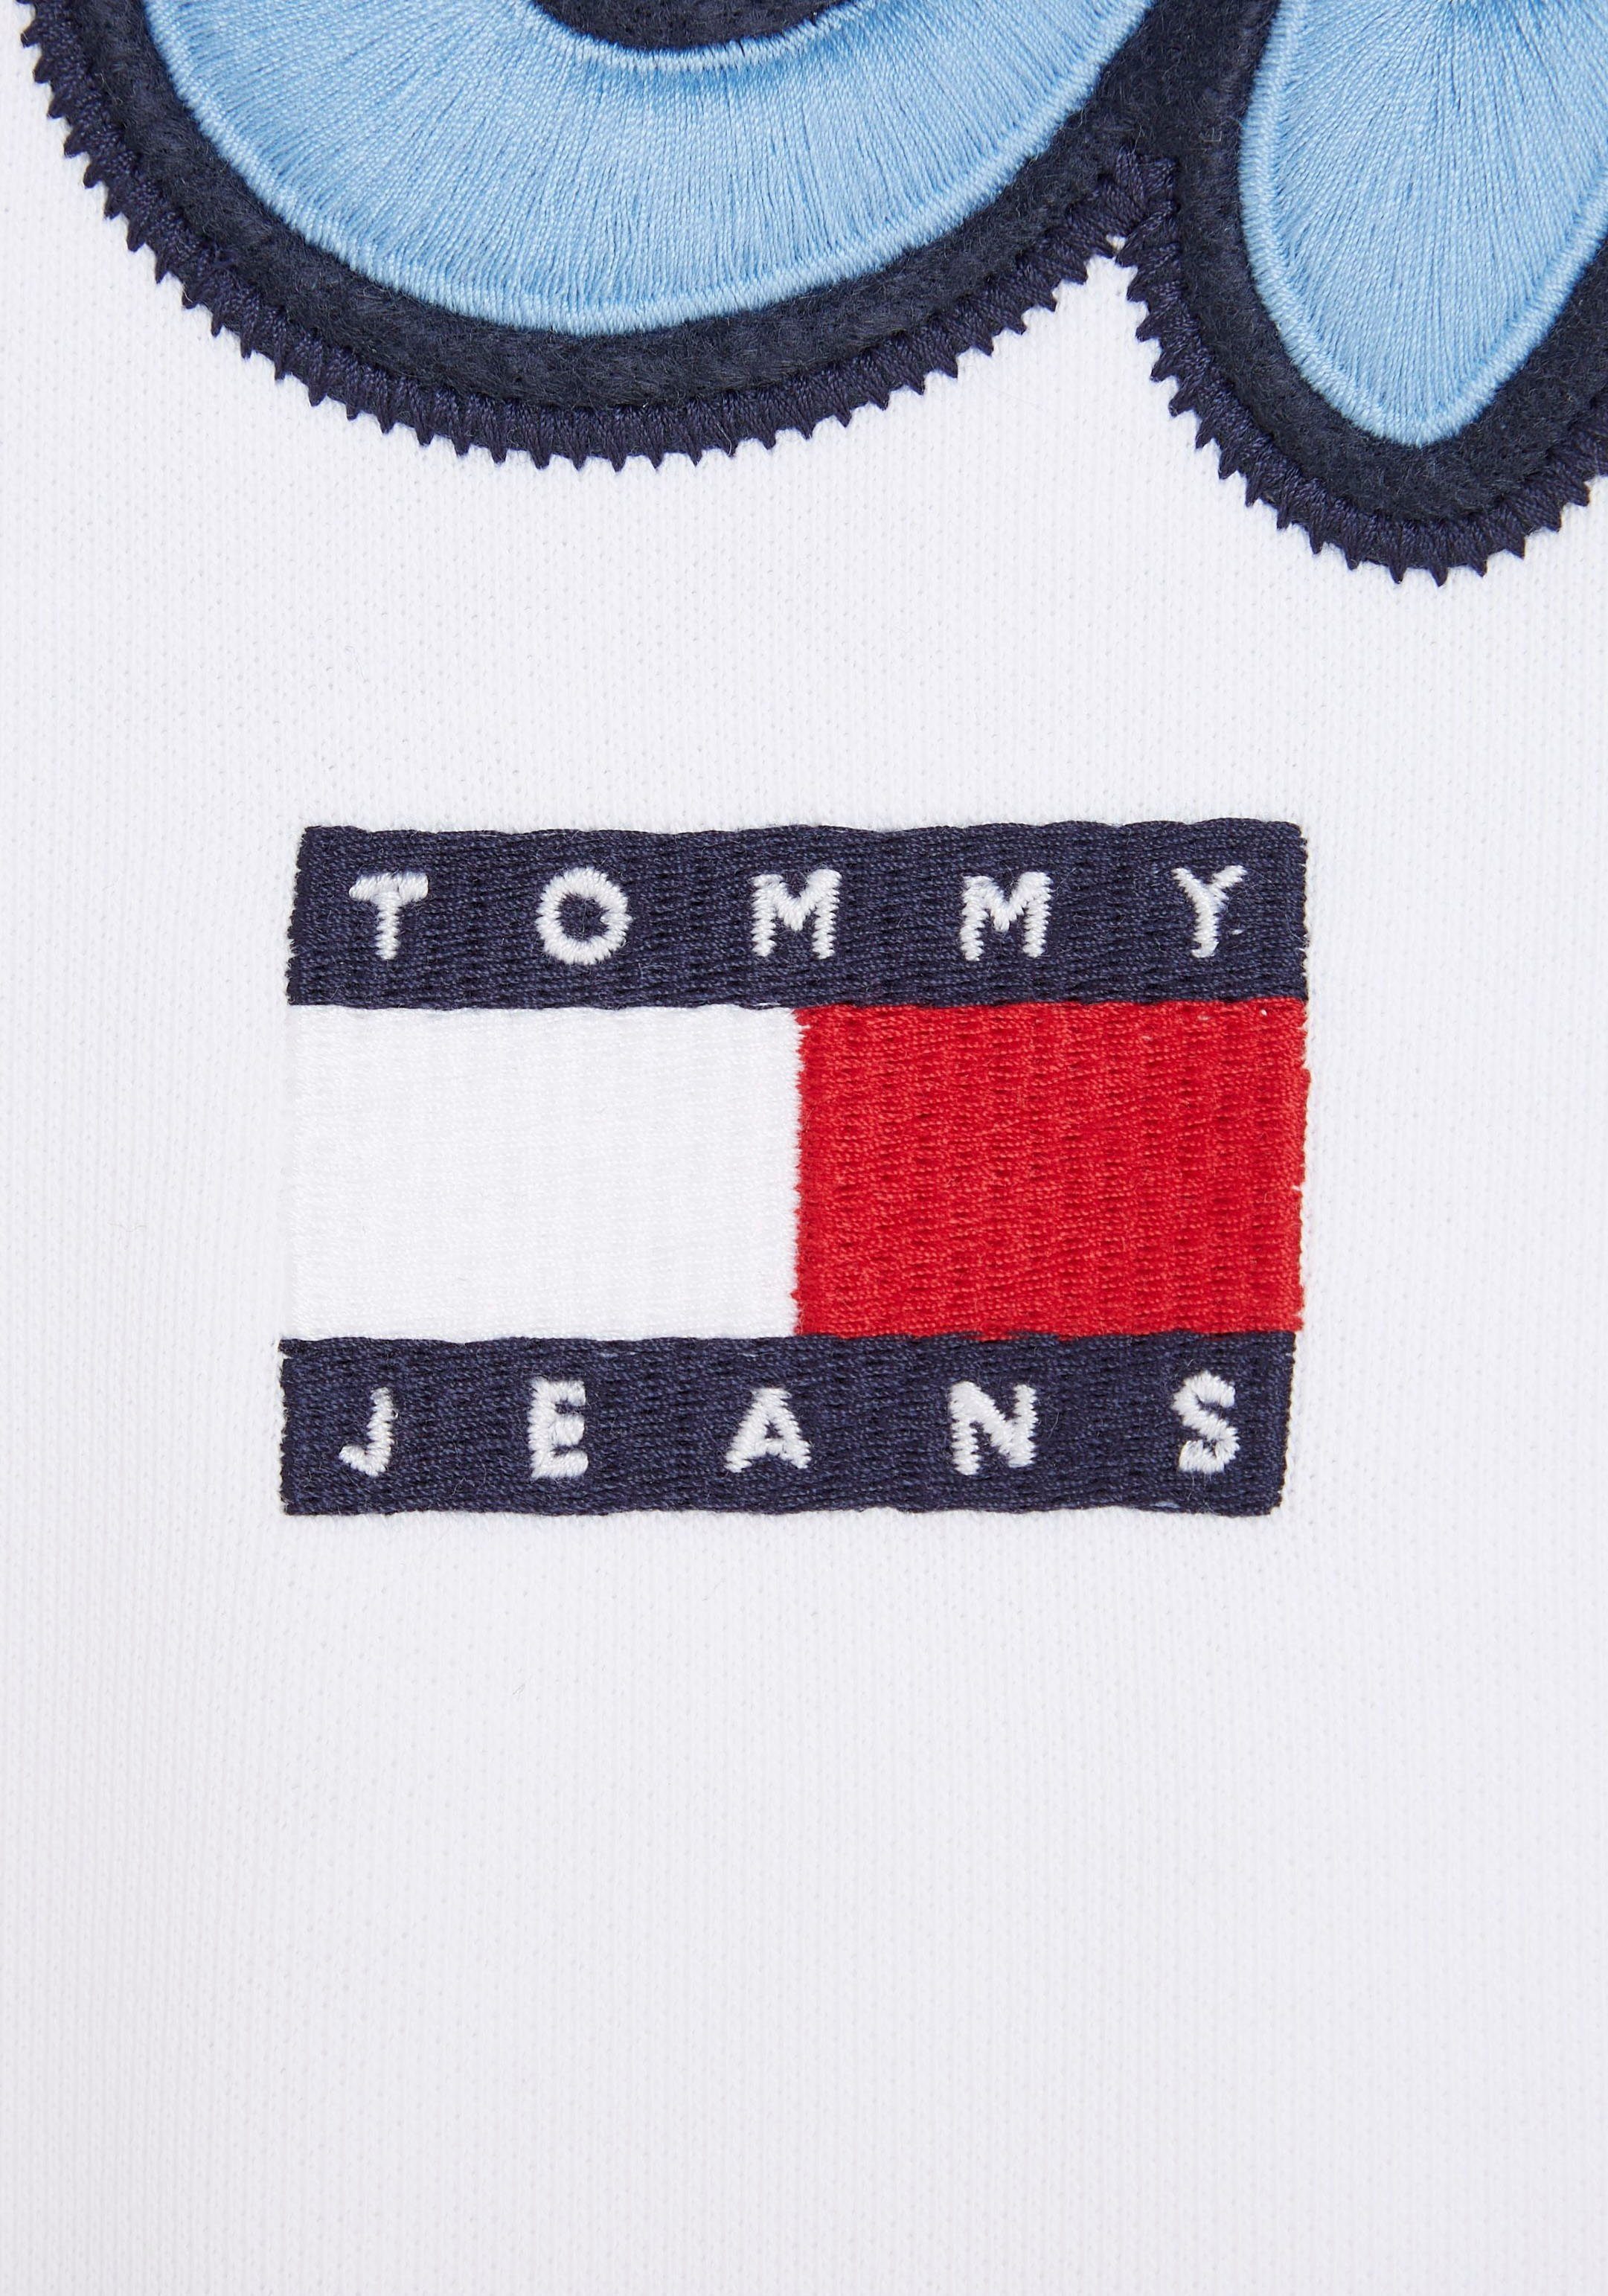 White Tommy der TJM Sweatshirt Logoschriftzug CREW TEXT Vorderseite POP auf mit großem Jeans COLLEGE RLX